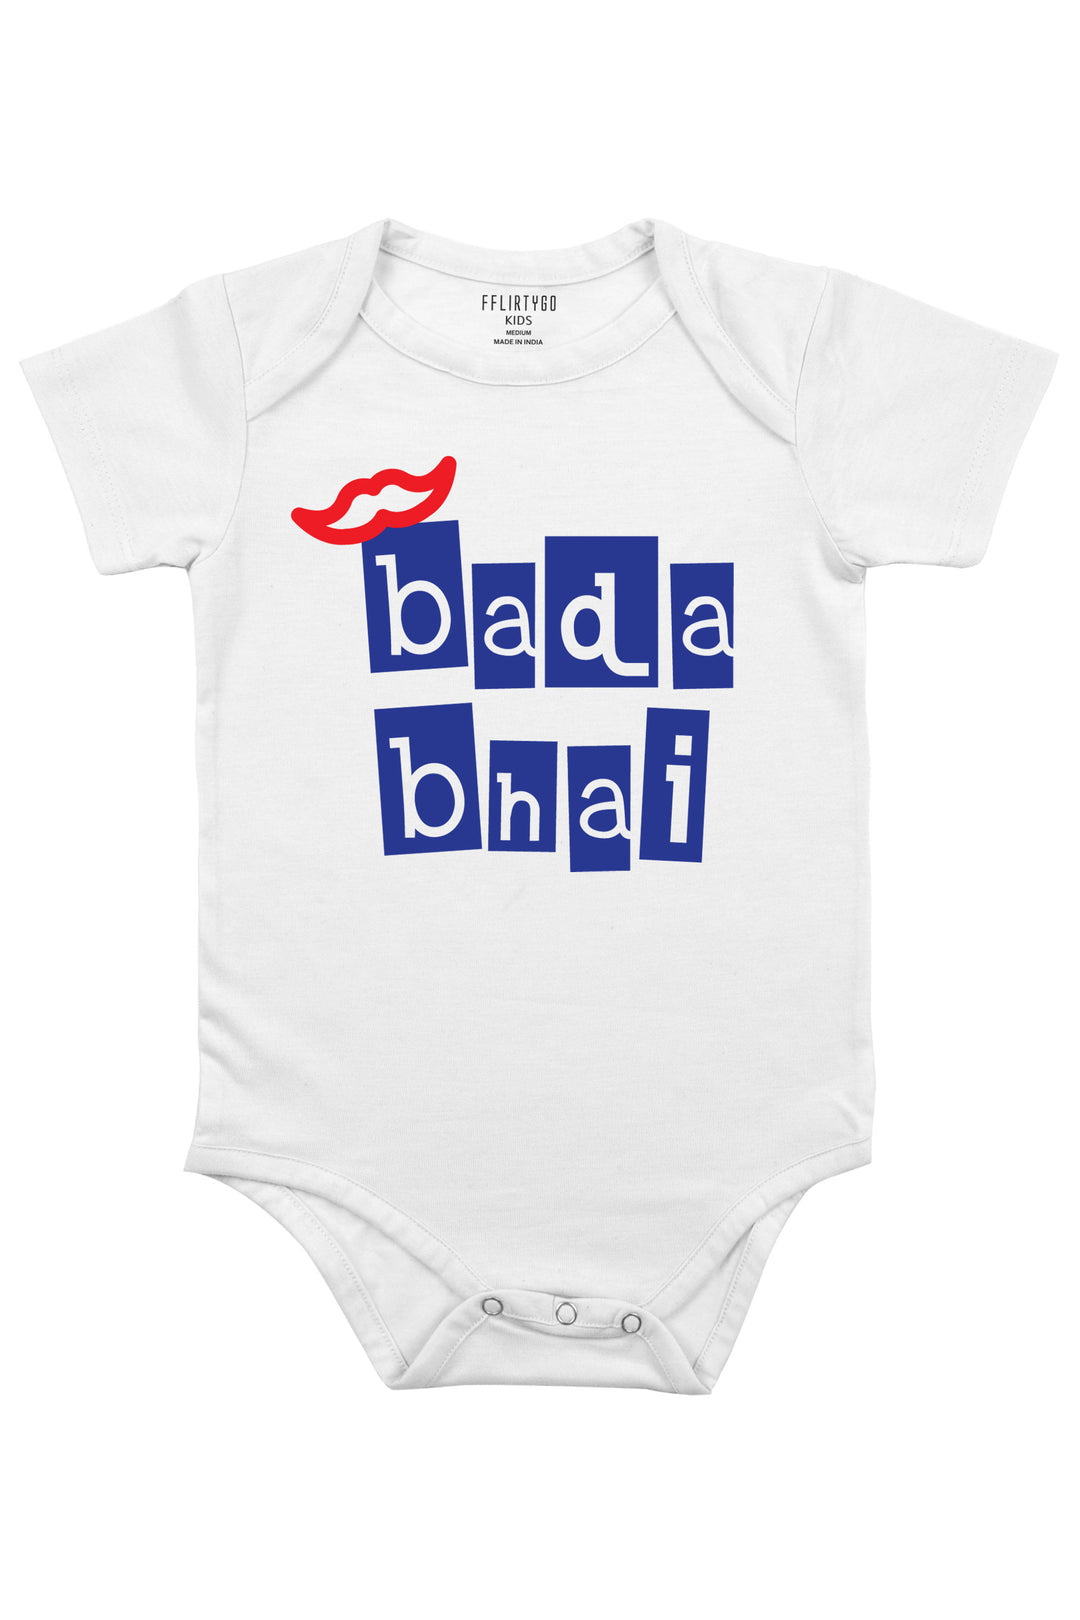 Bada Bhai in Box Design Baby Romper | Onesies